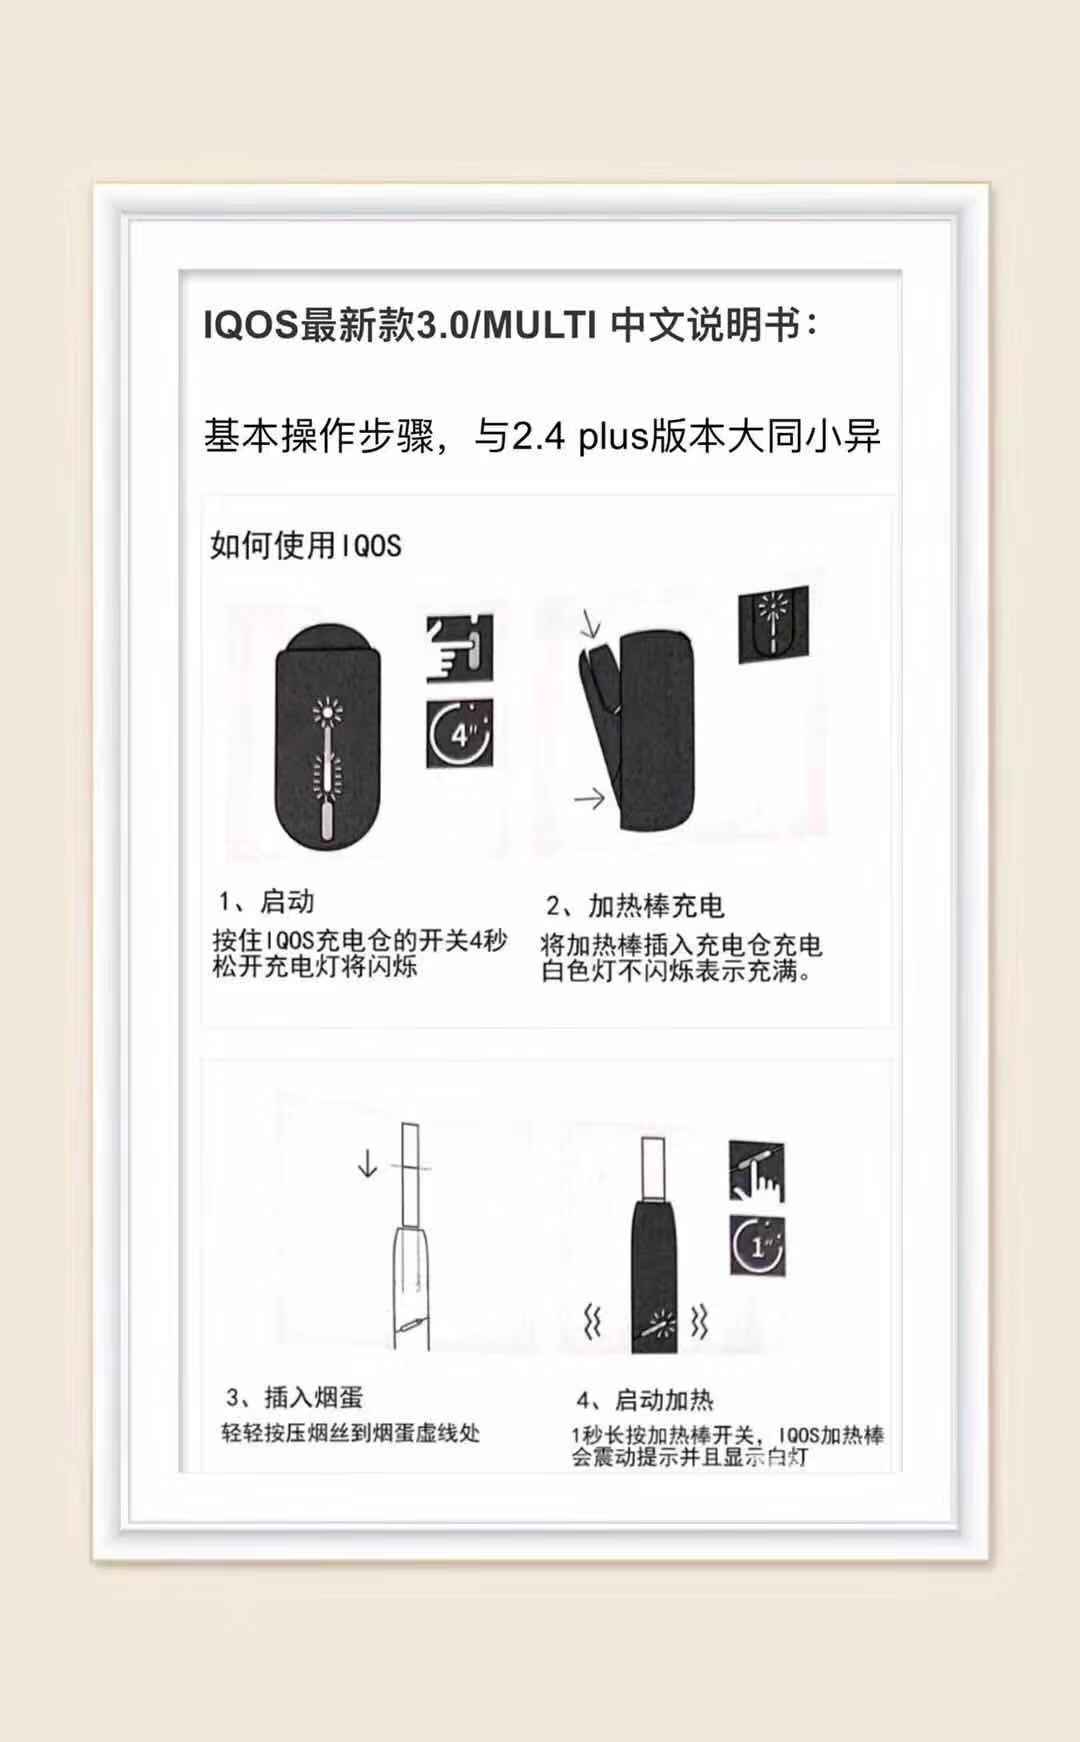 IQOS3.0及3.0DUO和一体机中文使用手册及注意事项